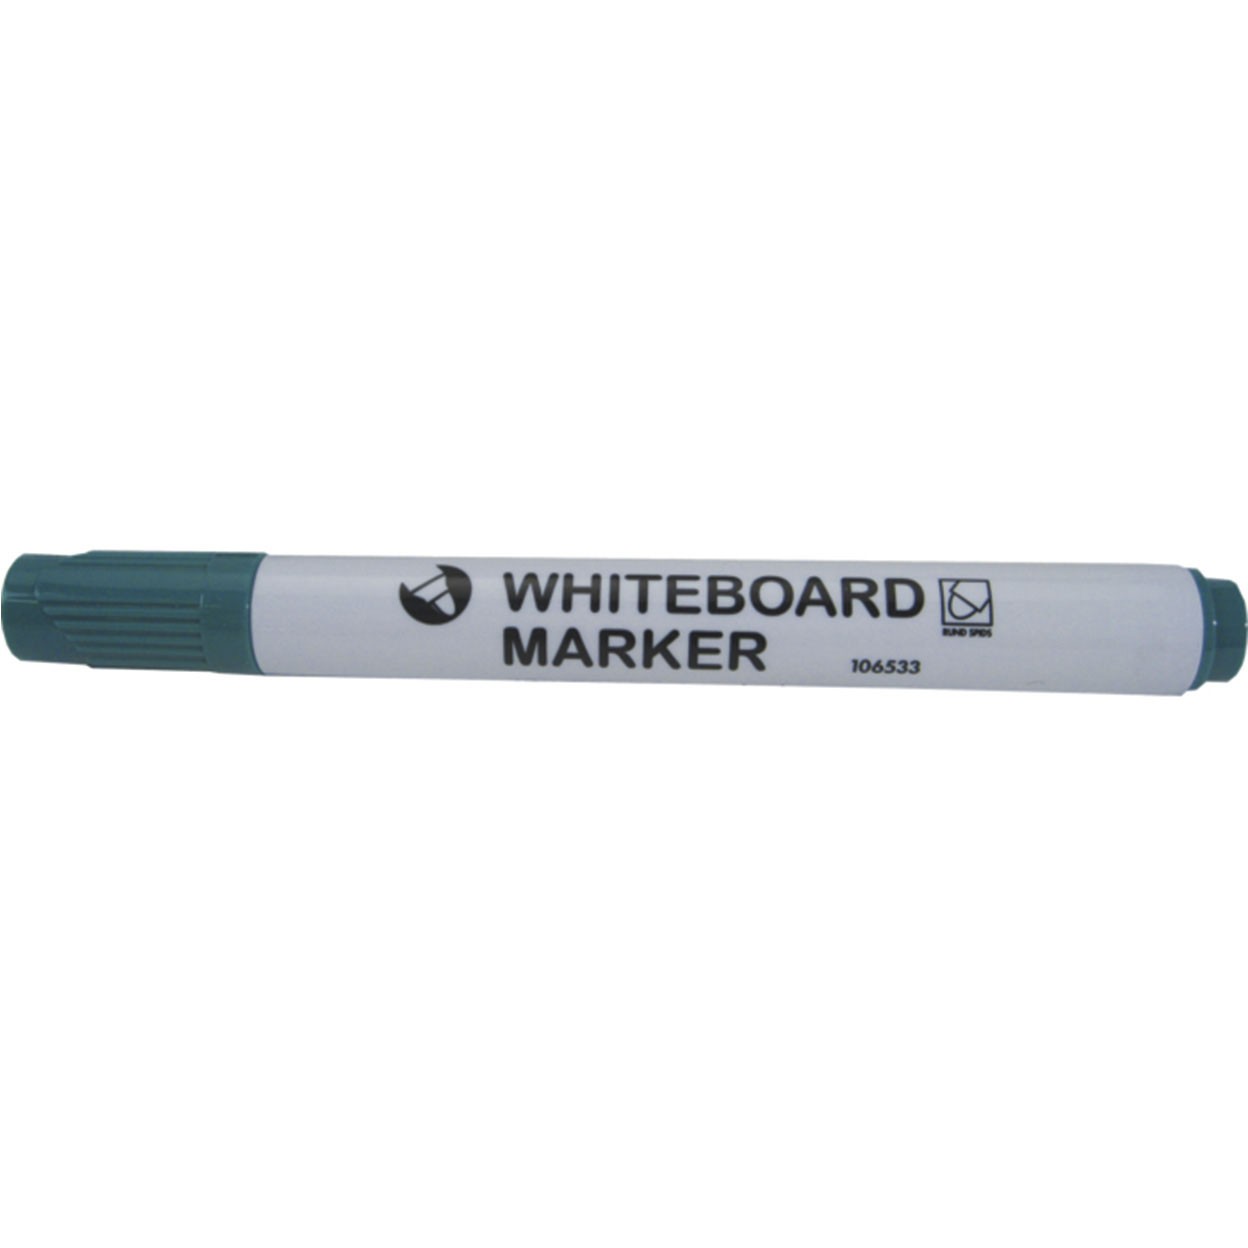 NOA whiteboardtusch i skrivefarven grøn med skrå stregbredde på 3 mm